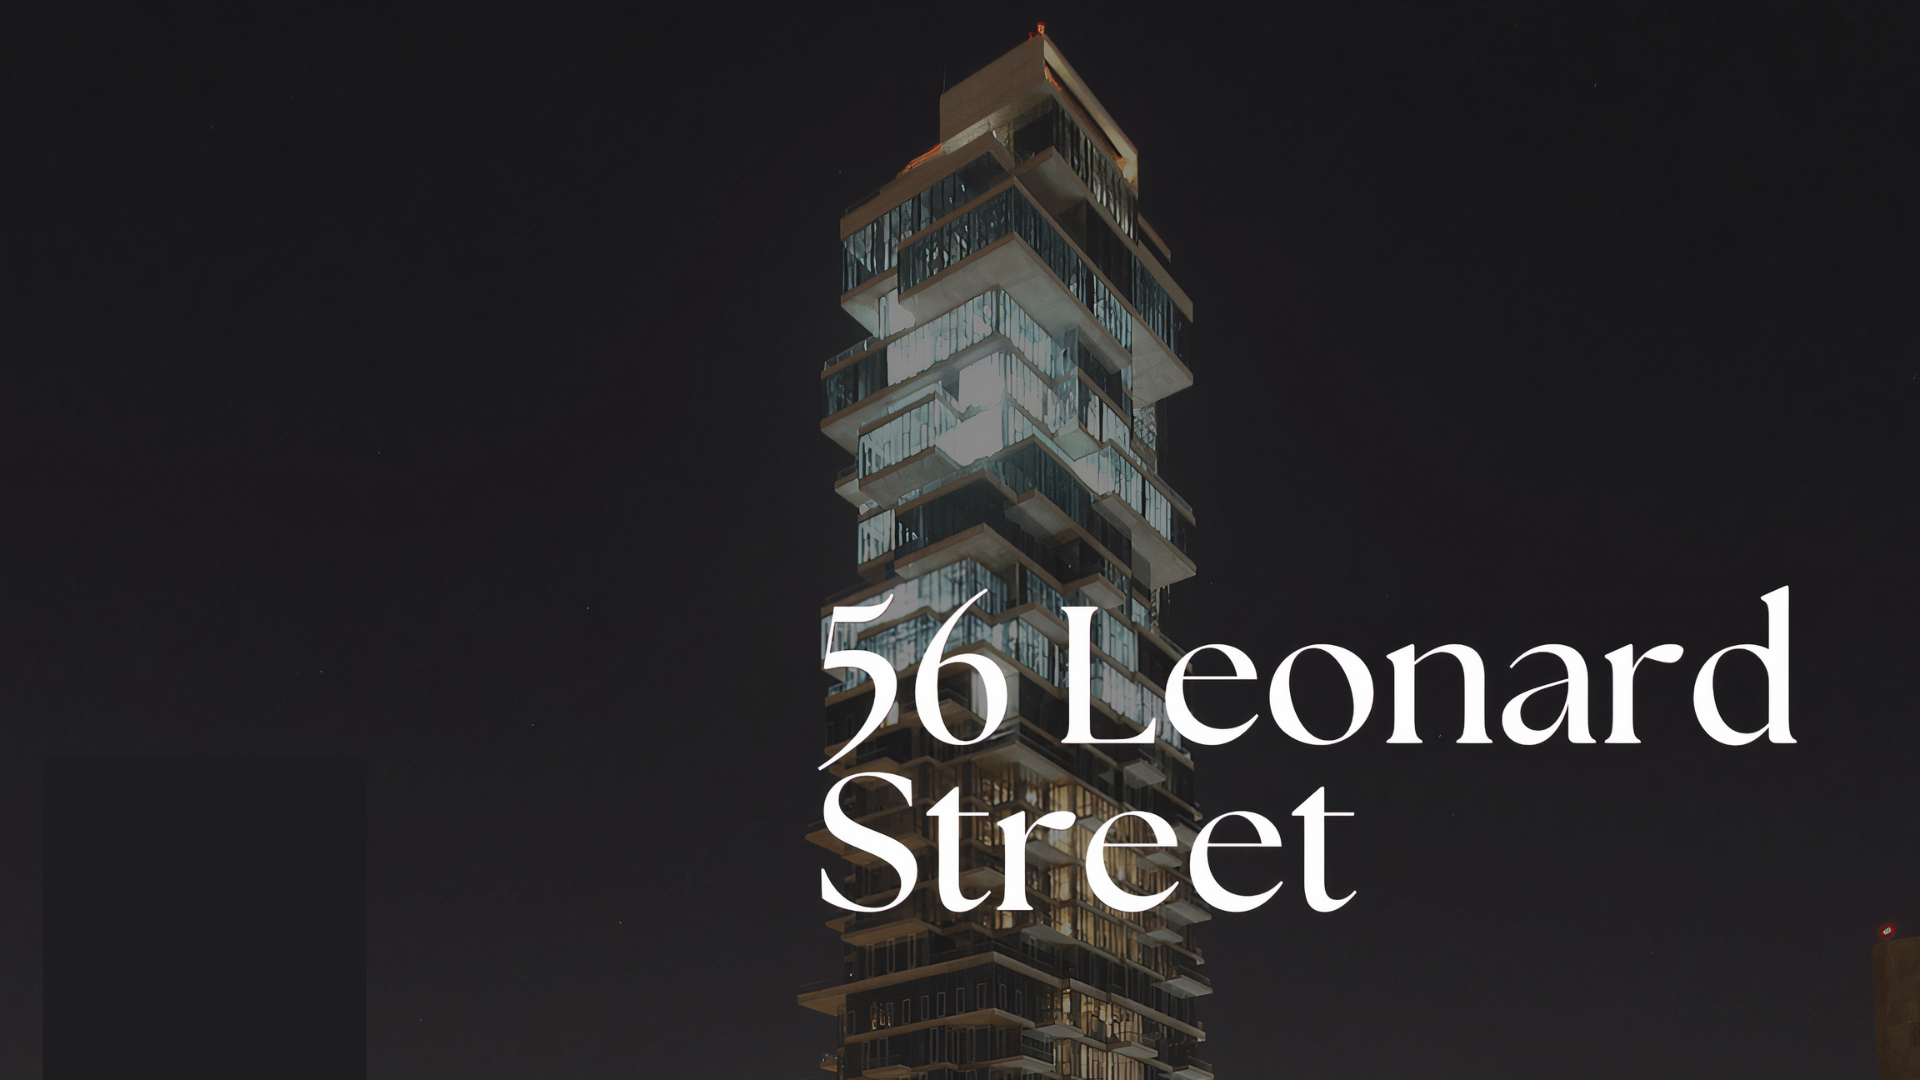 56-leonard-street-image-apartment